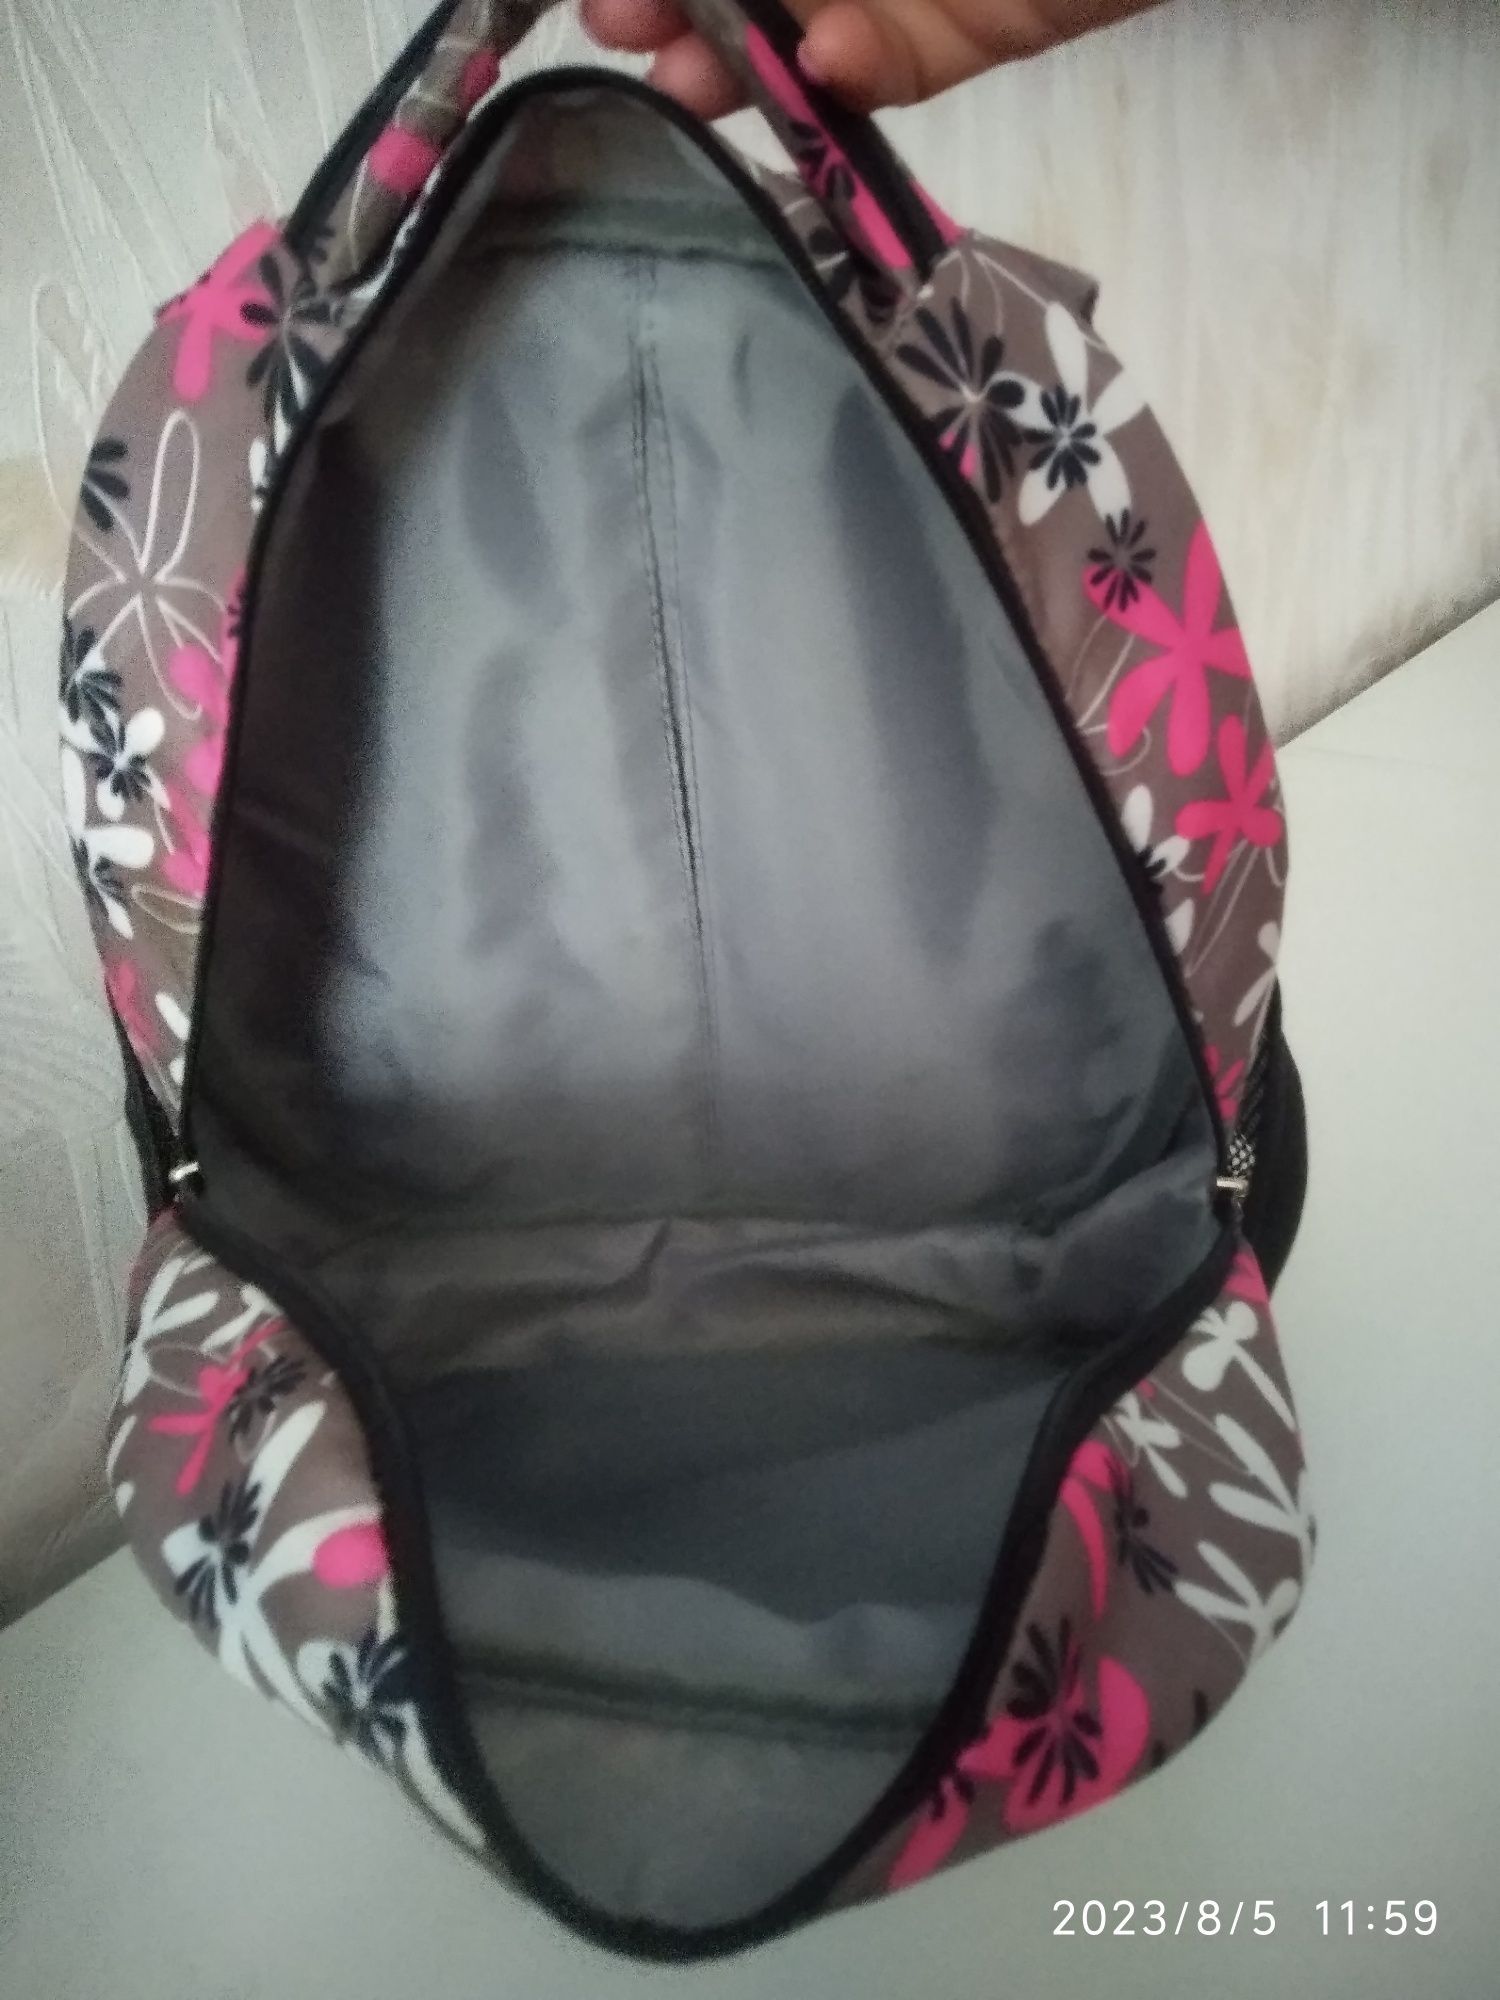 Рюкзак шкільний для дівчинки фірми Dolli плюс пенал в подарунок